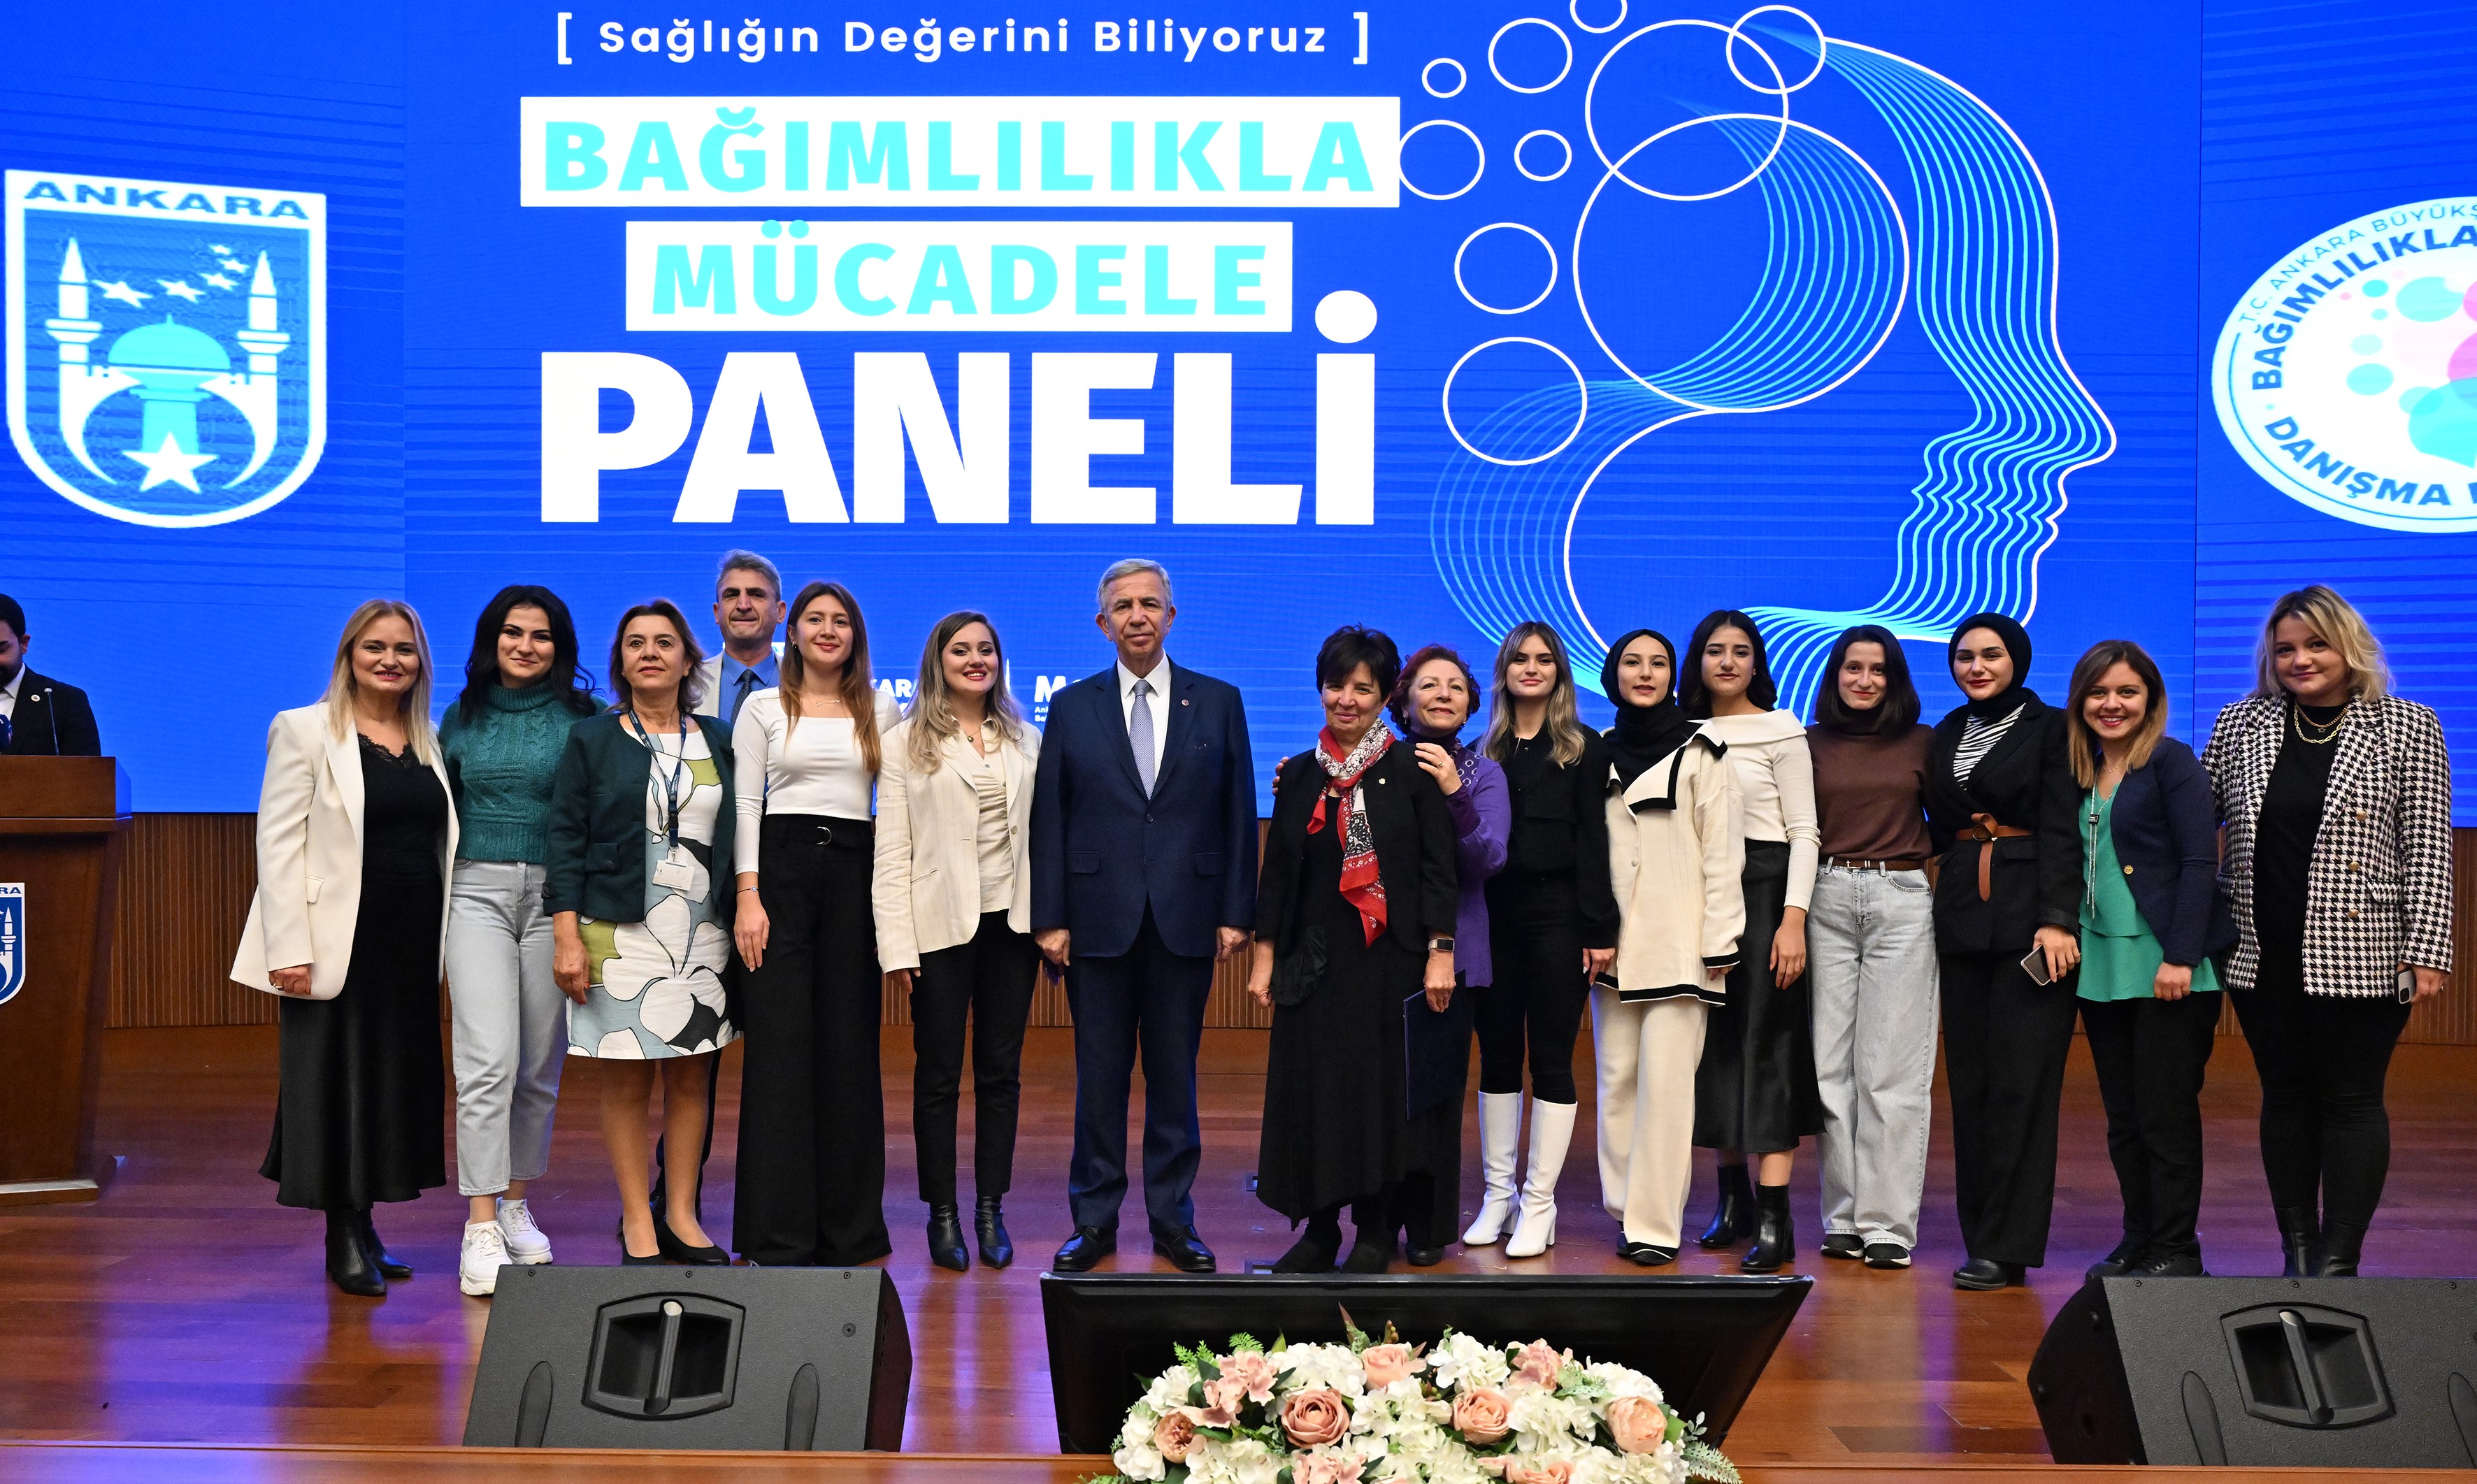 Ankara Büyükşehir Belediyesi’nden ‘Bağımlılıkla Mücadele Paneli’